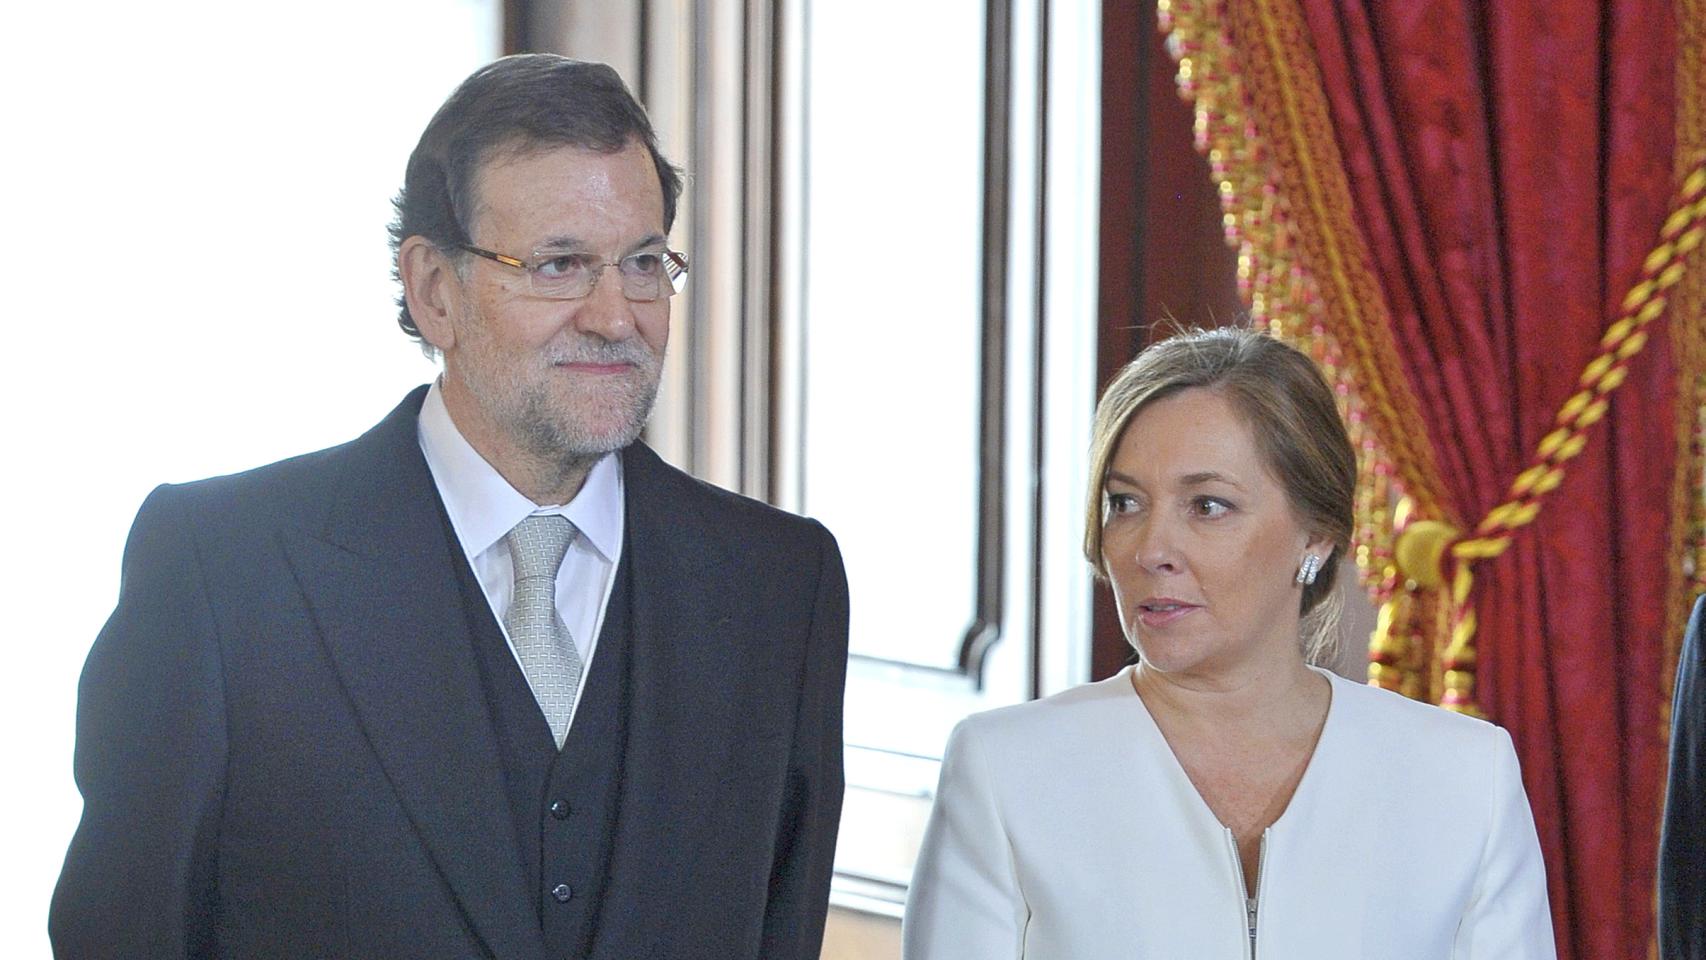 Mariano Rajoy y Viri en un evento en 2014.